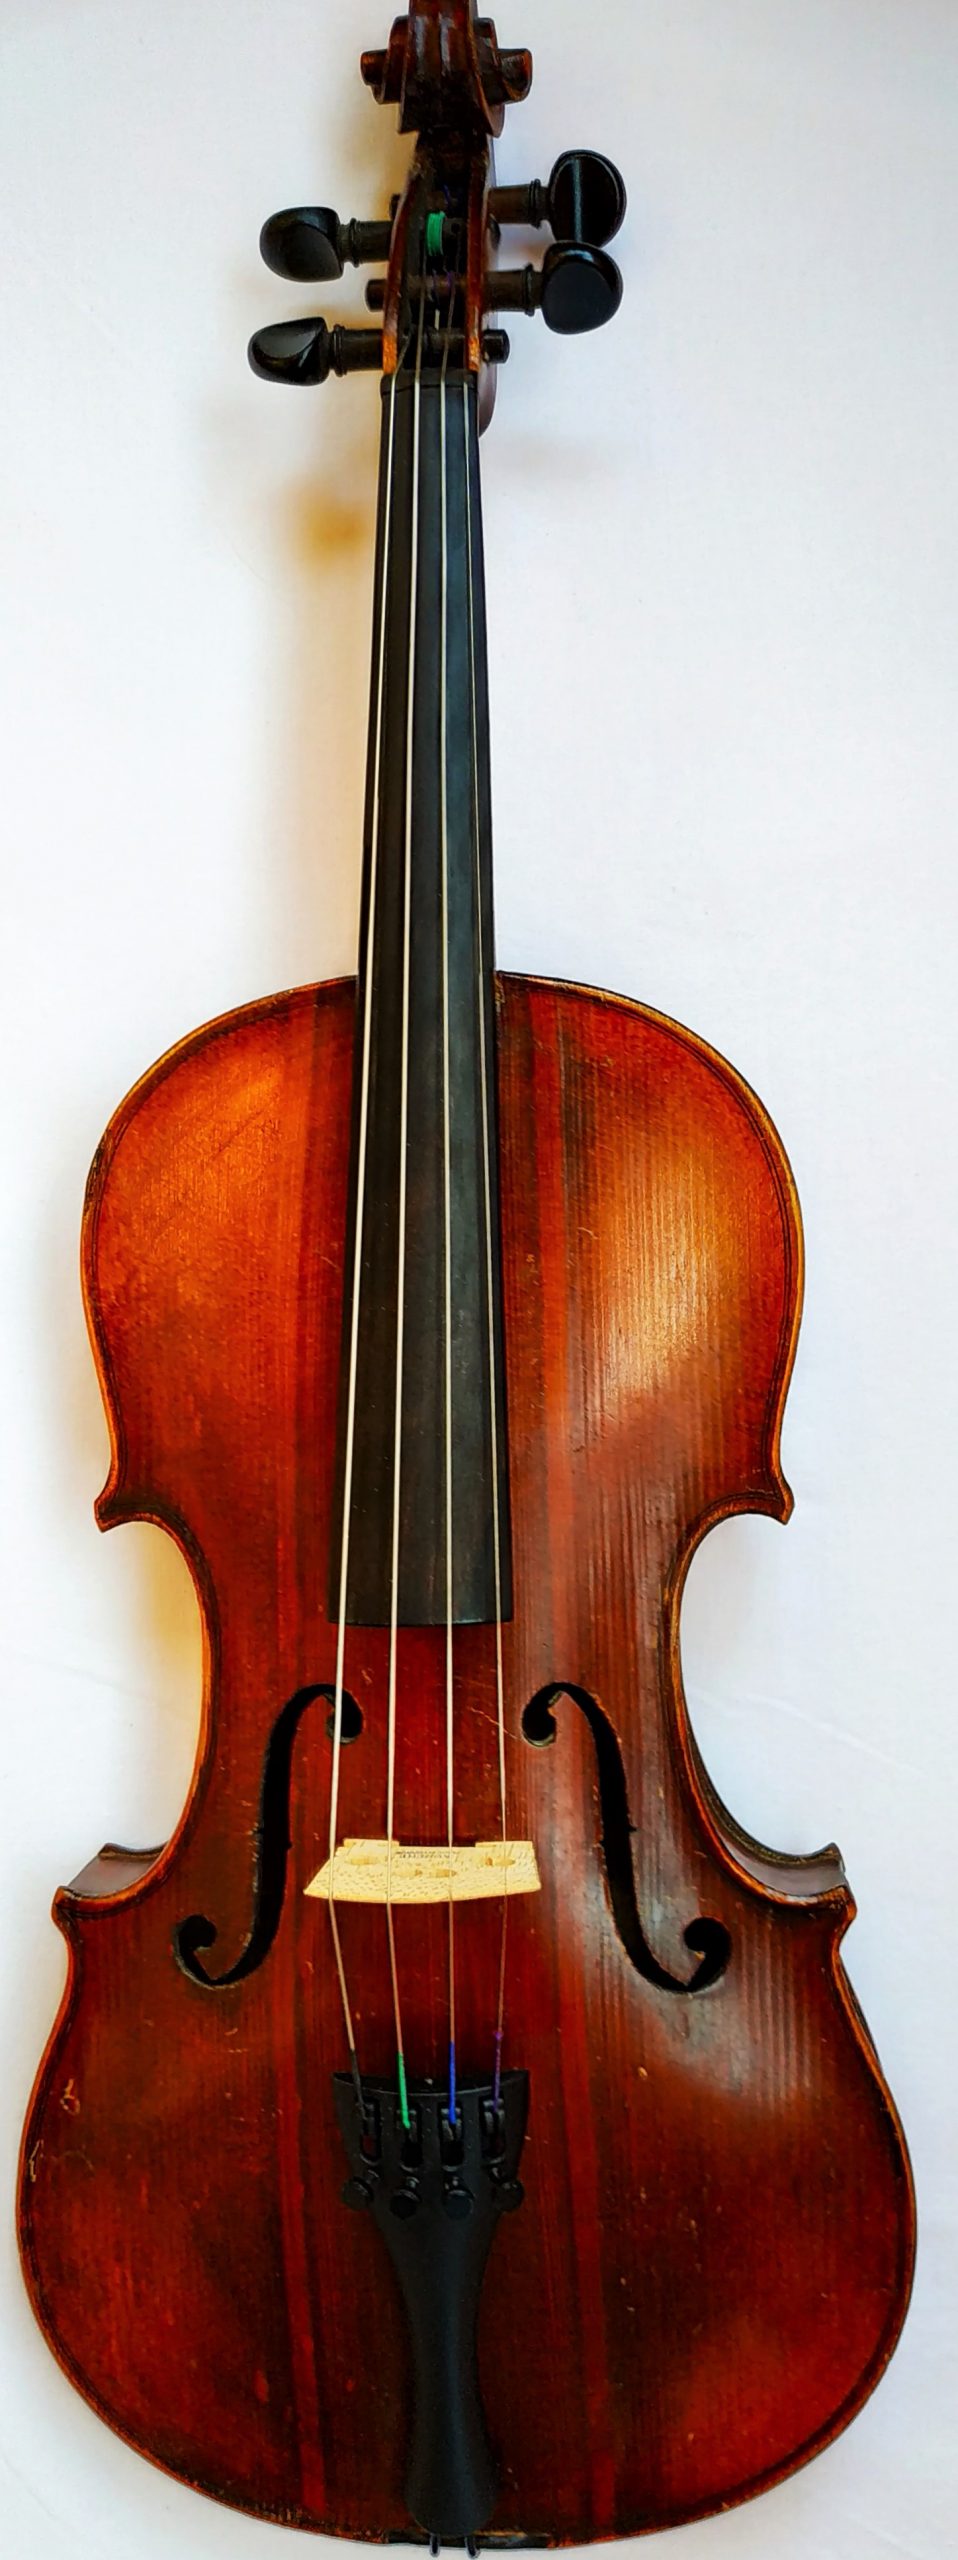 Немецкая скрипка 19го века